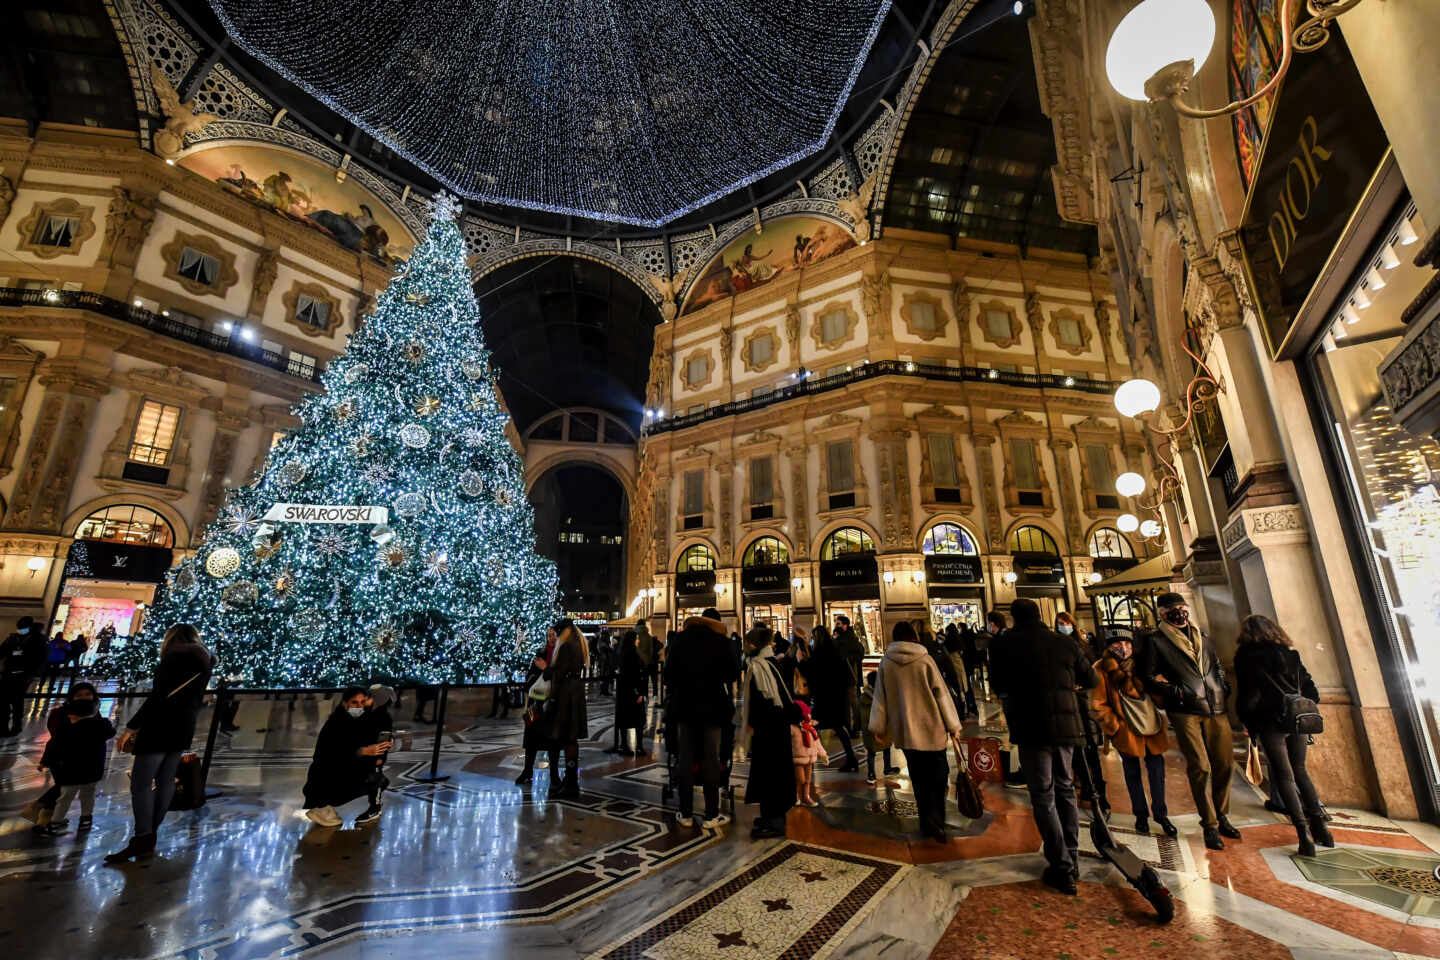 Italia impone un confinamiento casi total para los días festivos de la Navidad